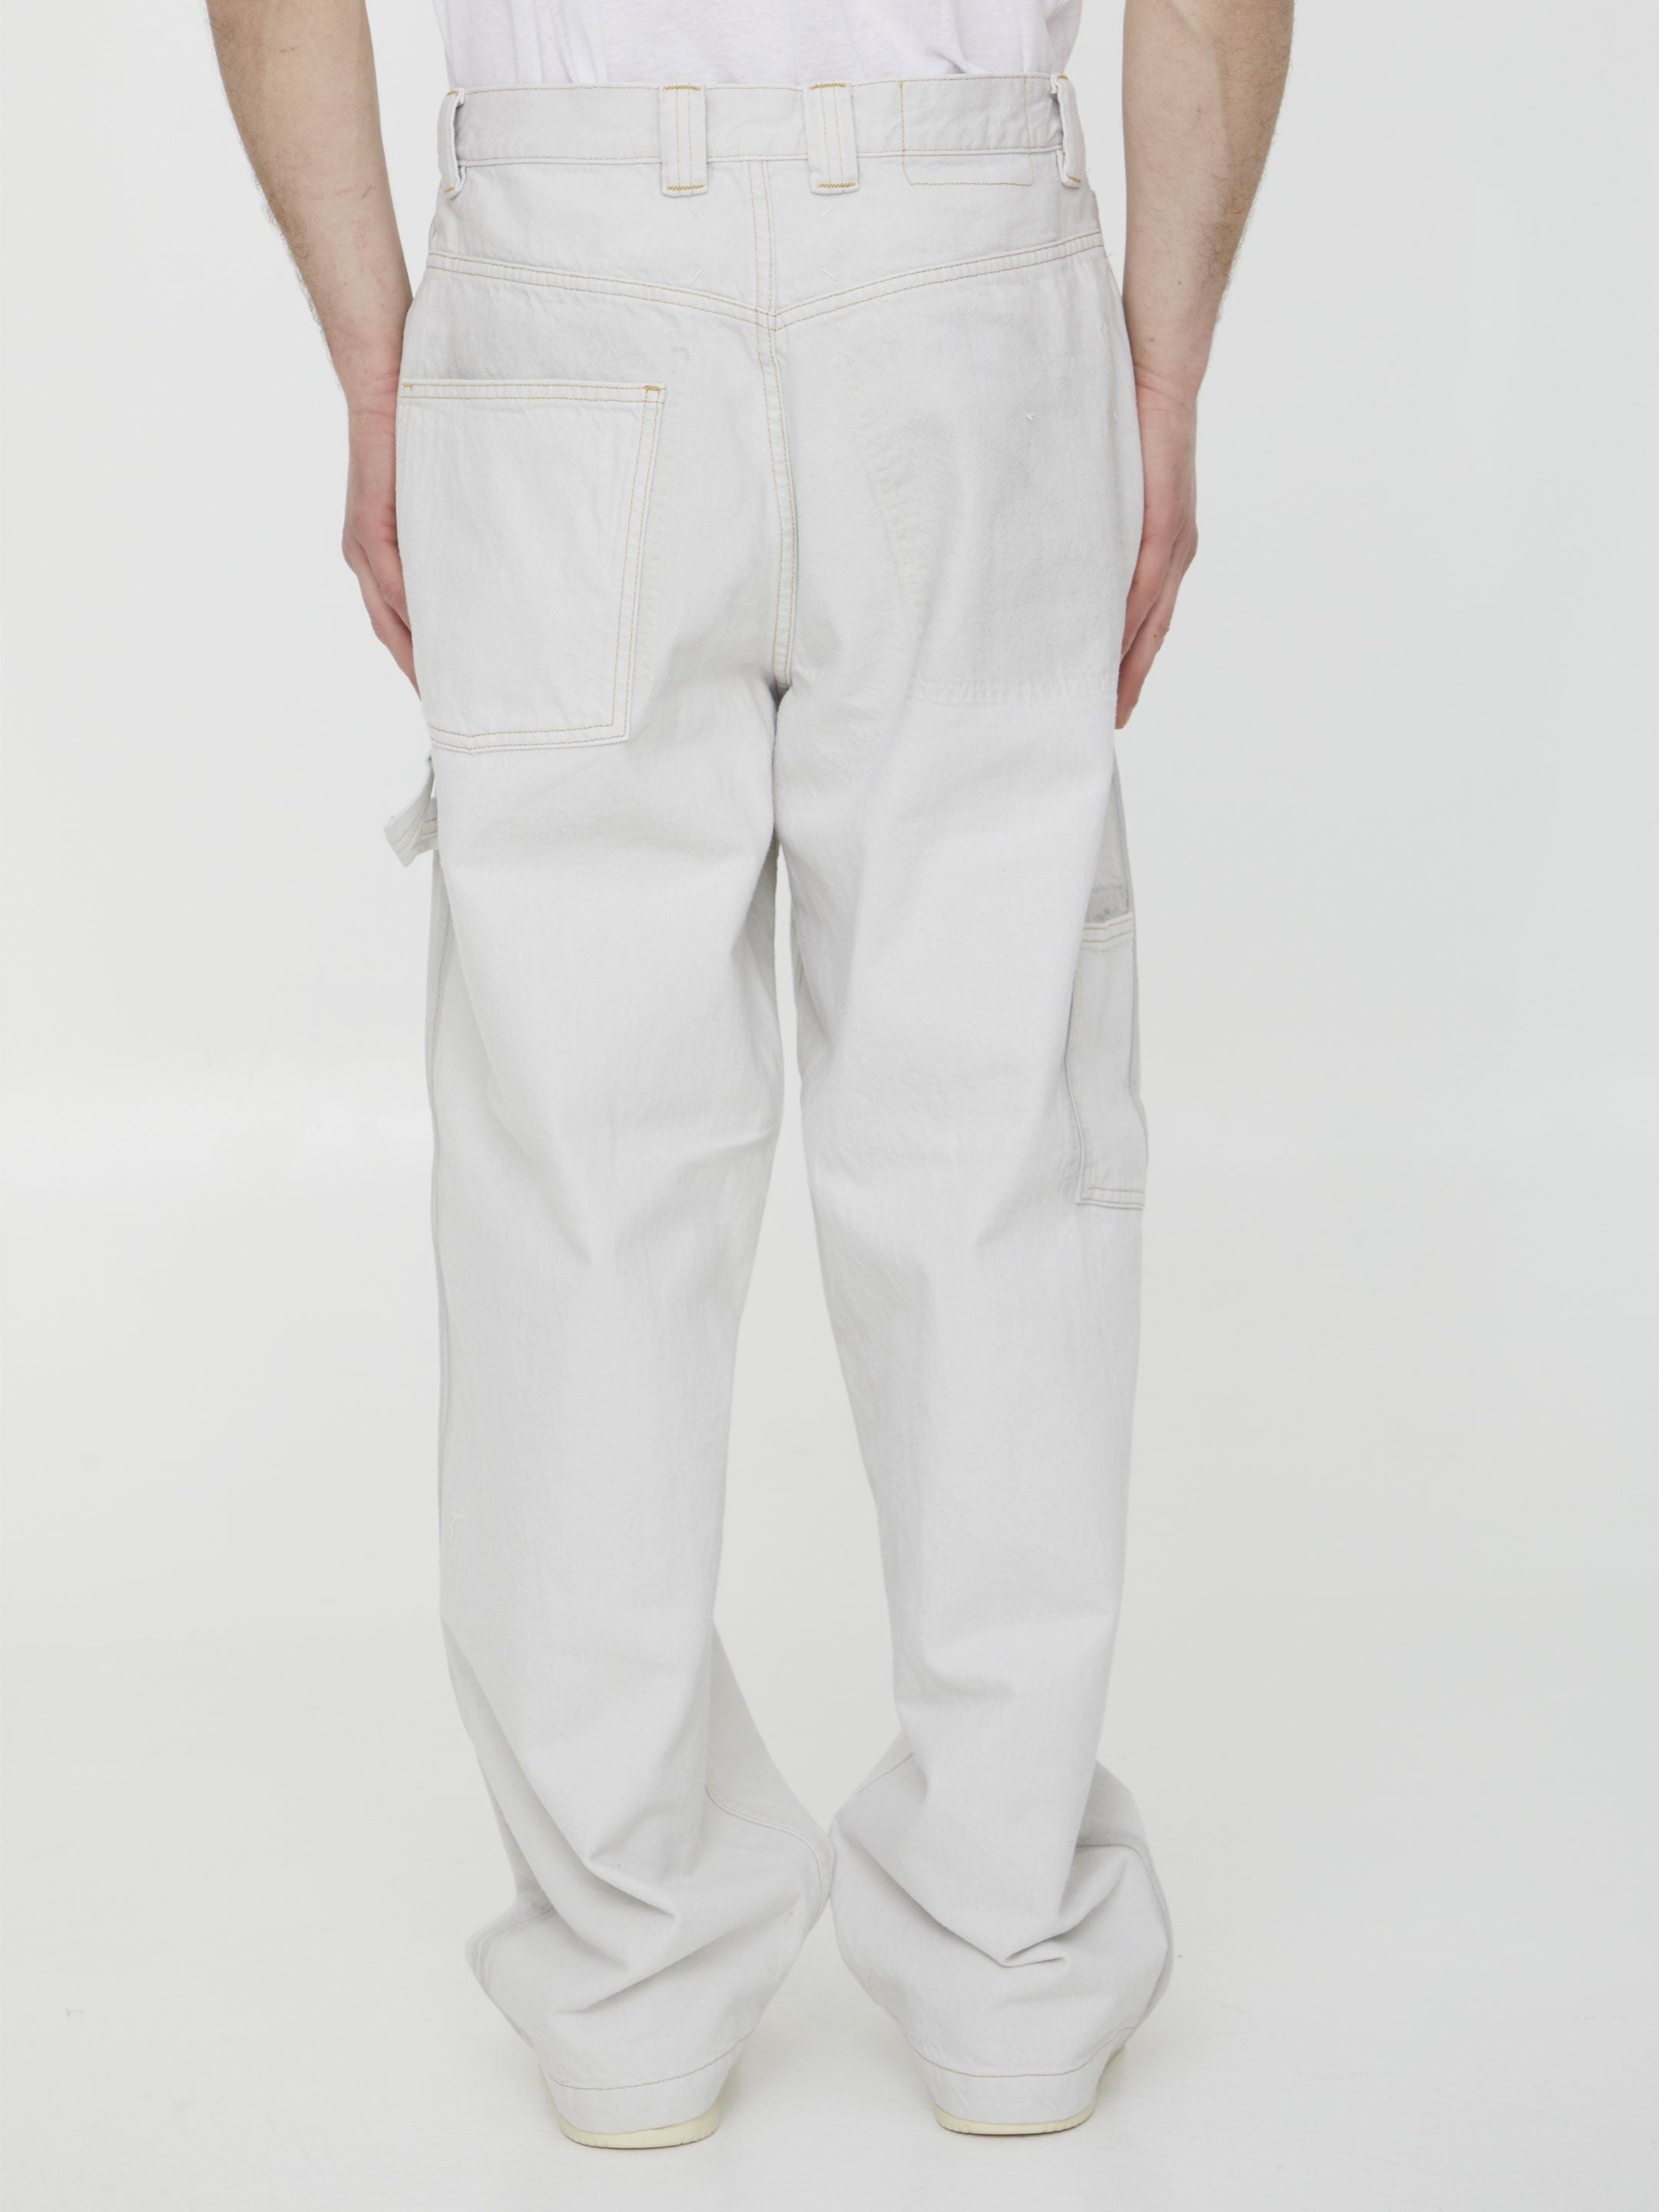 MAISON-MARGIELA-OUTLET-SALE-Cotton-denim-trousers-Hosen-ARCHIVE-COLLECTION-4.jpg